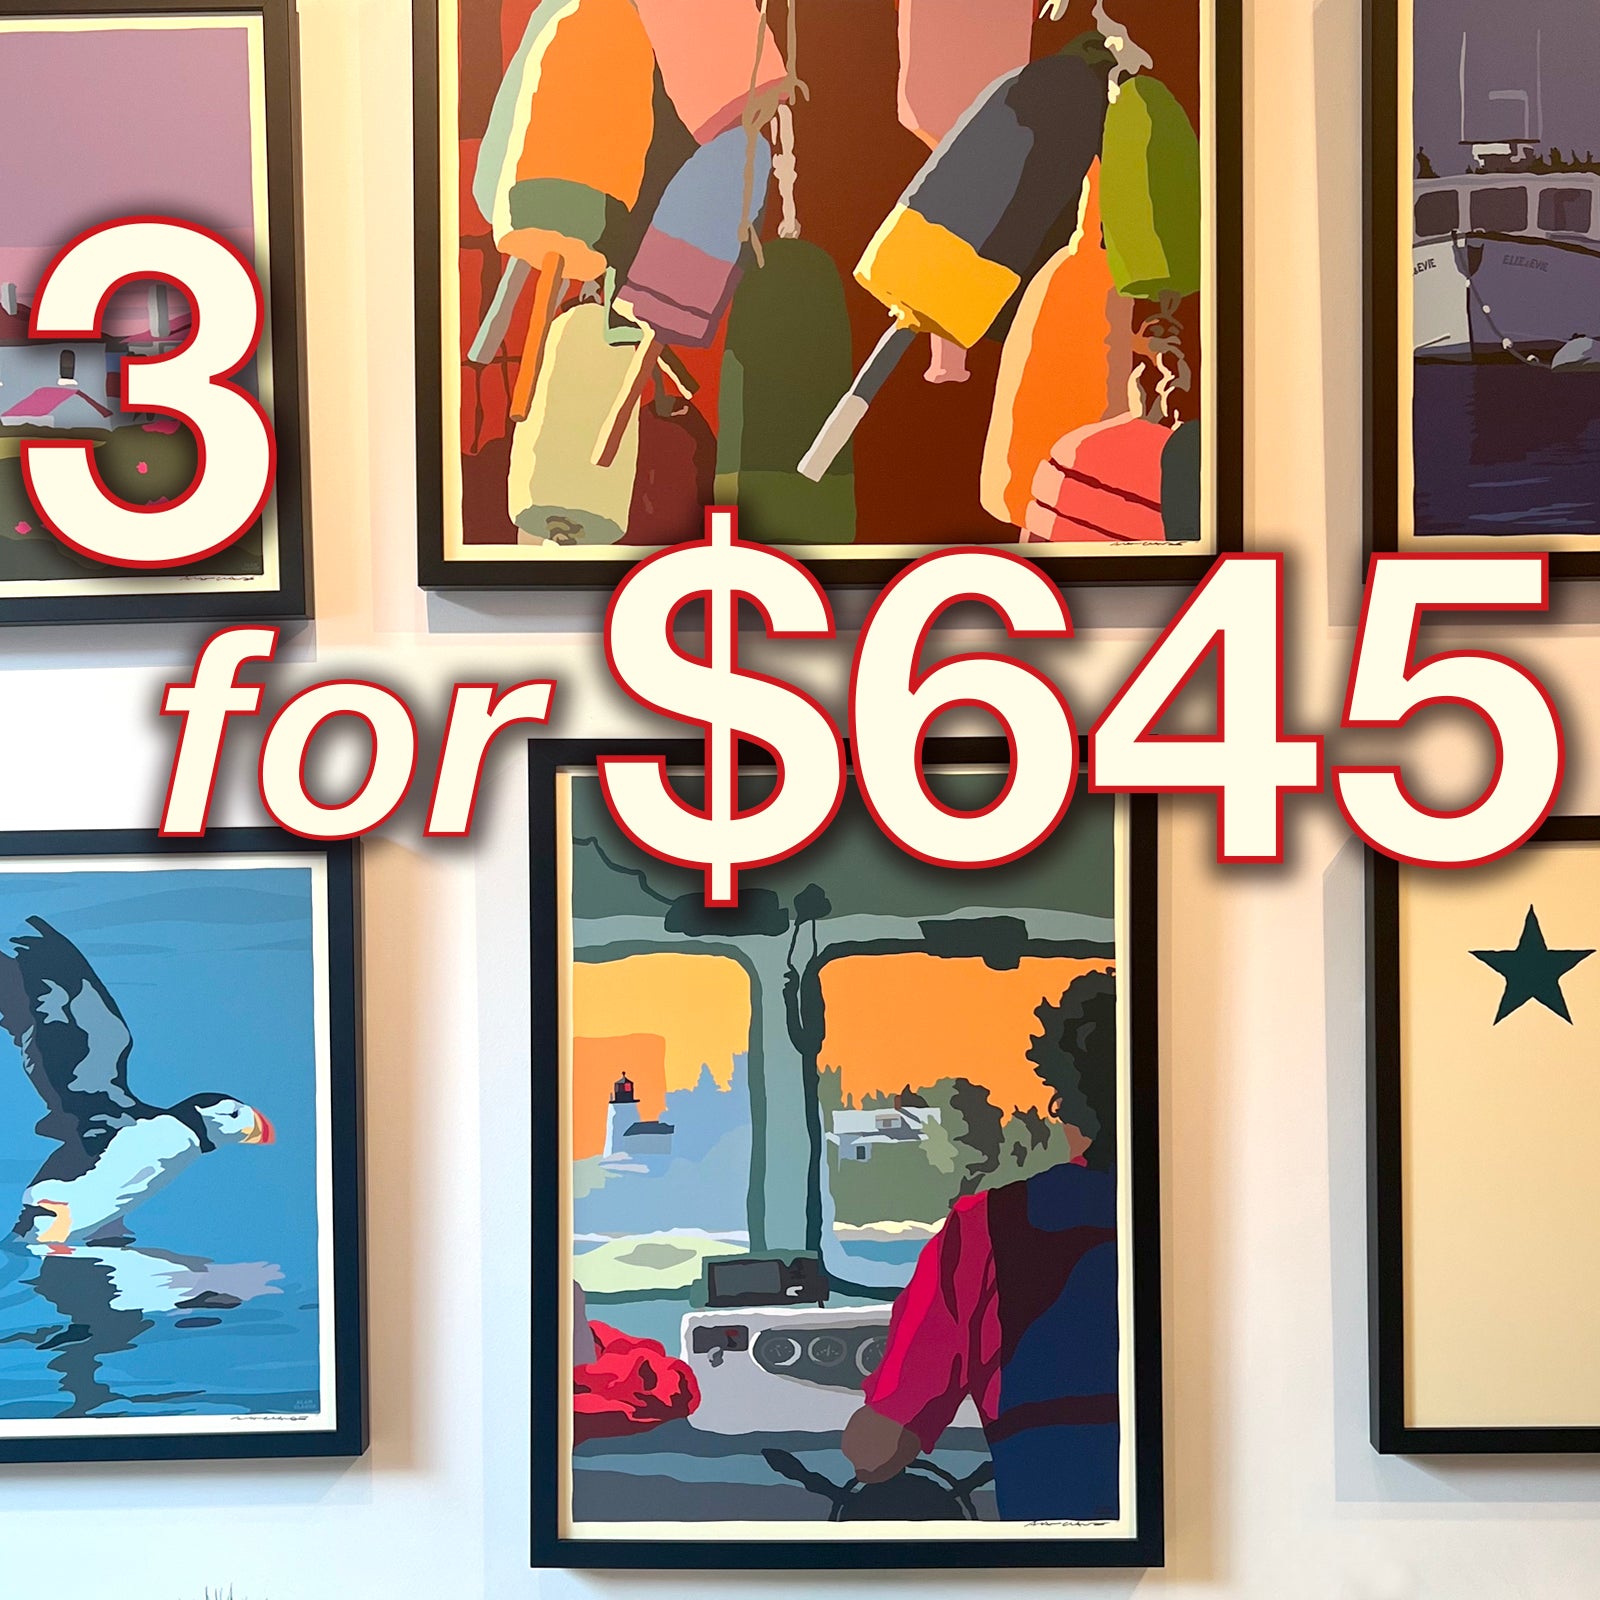 3 FRAMED 18x24's Prints for $645